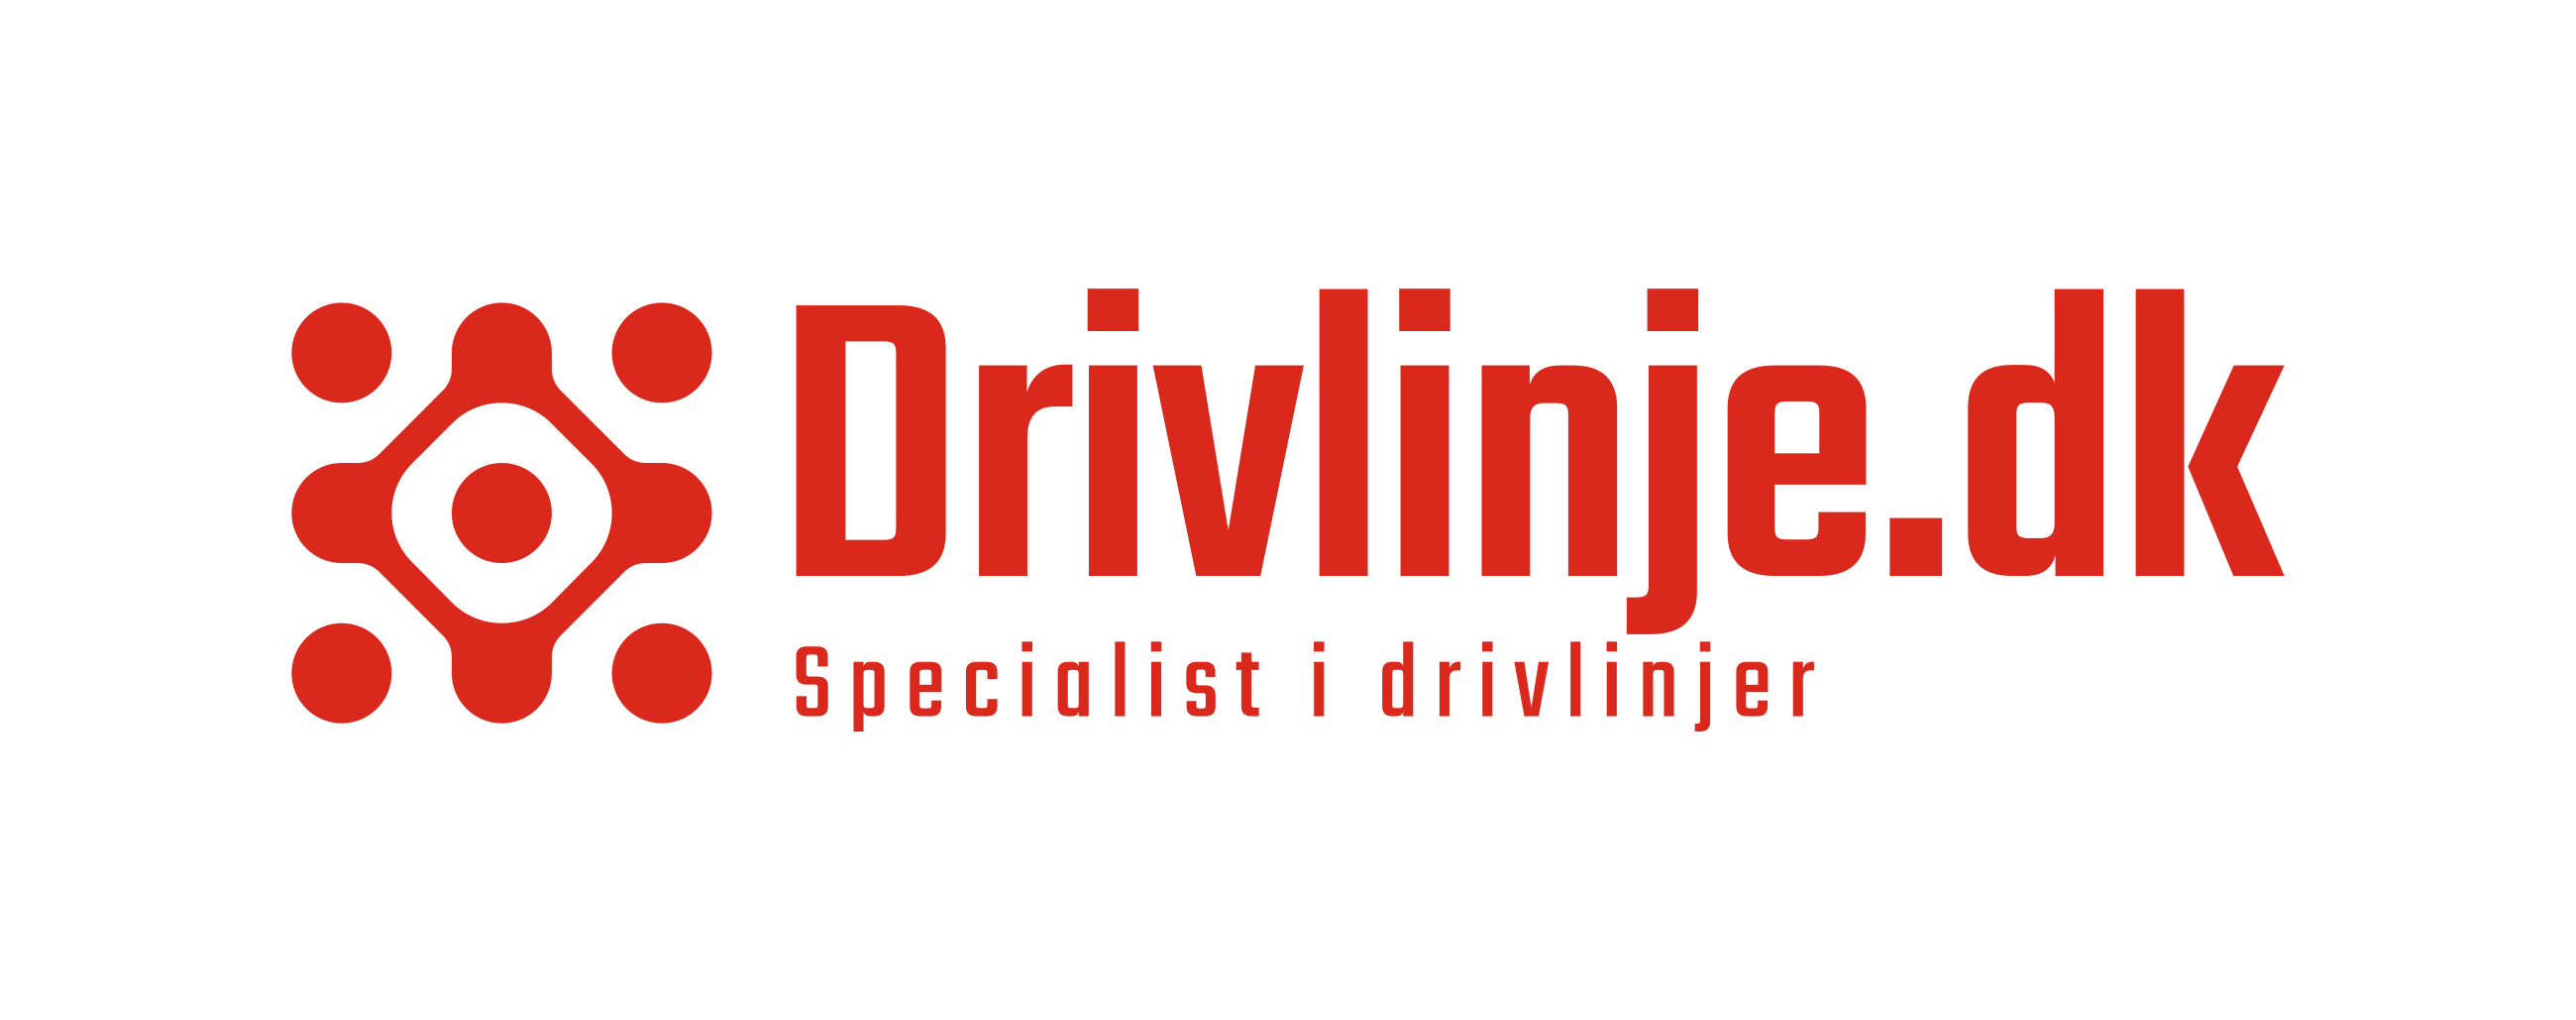 Drivlinje.dk logo